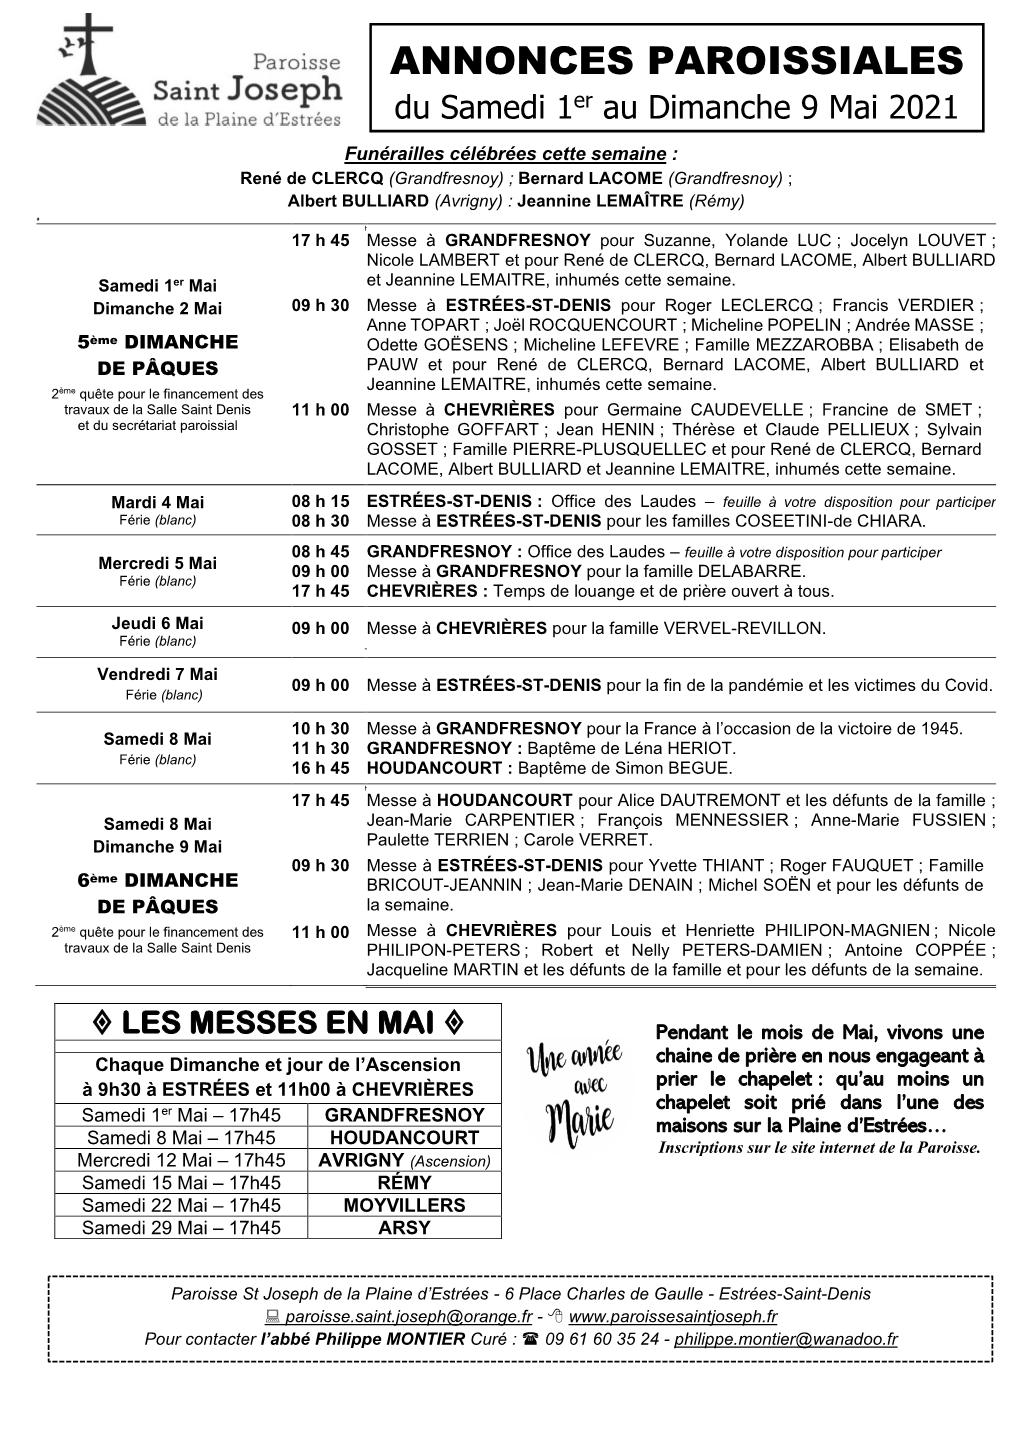 ANNONCES PAROISSIALES Du Samedi 1Er Au Dimanche 9 Mai 2021